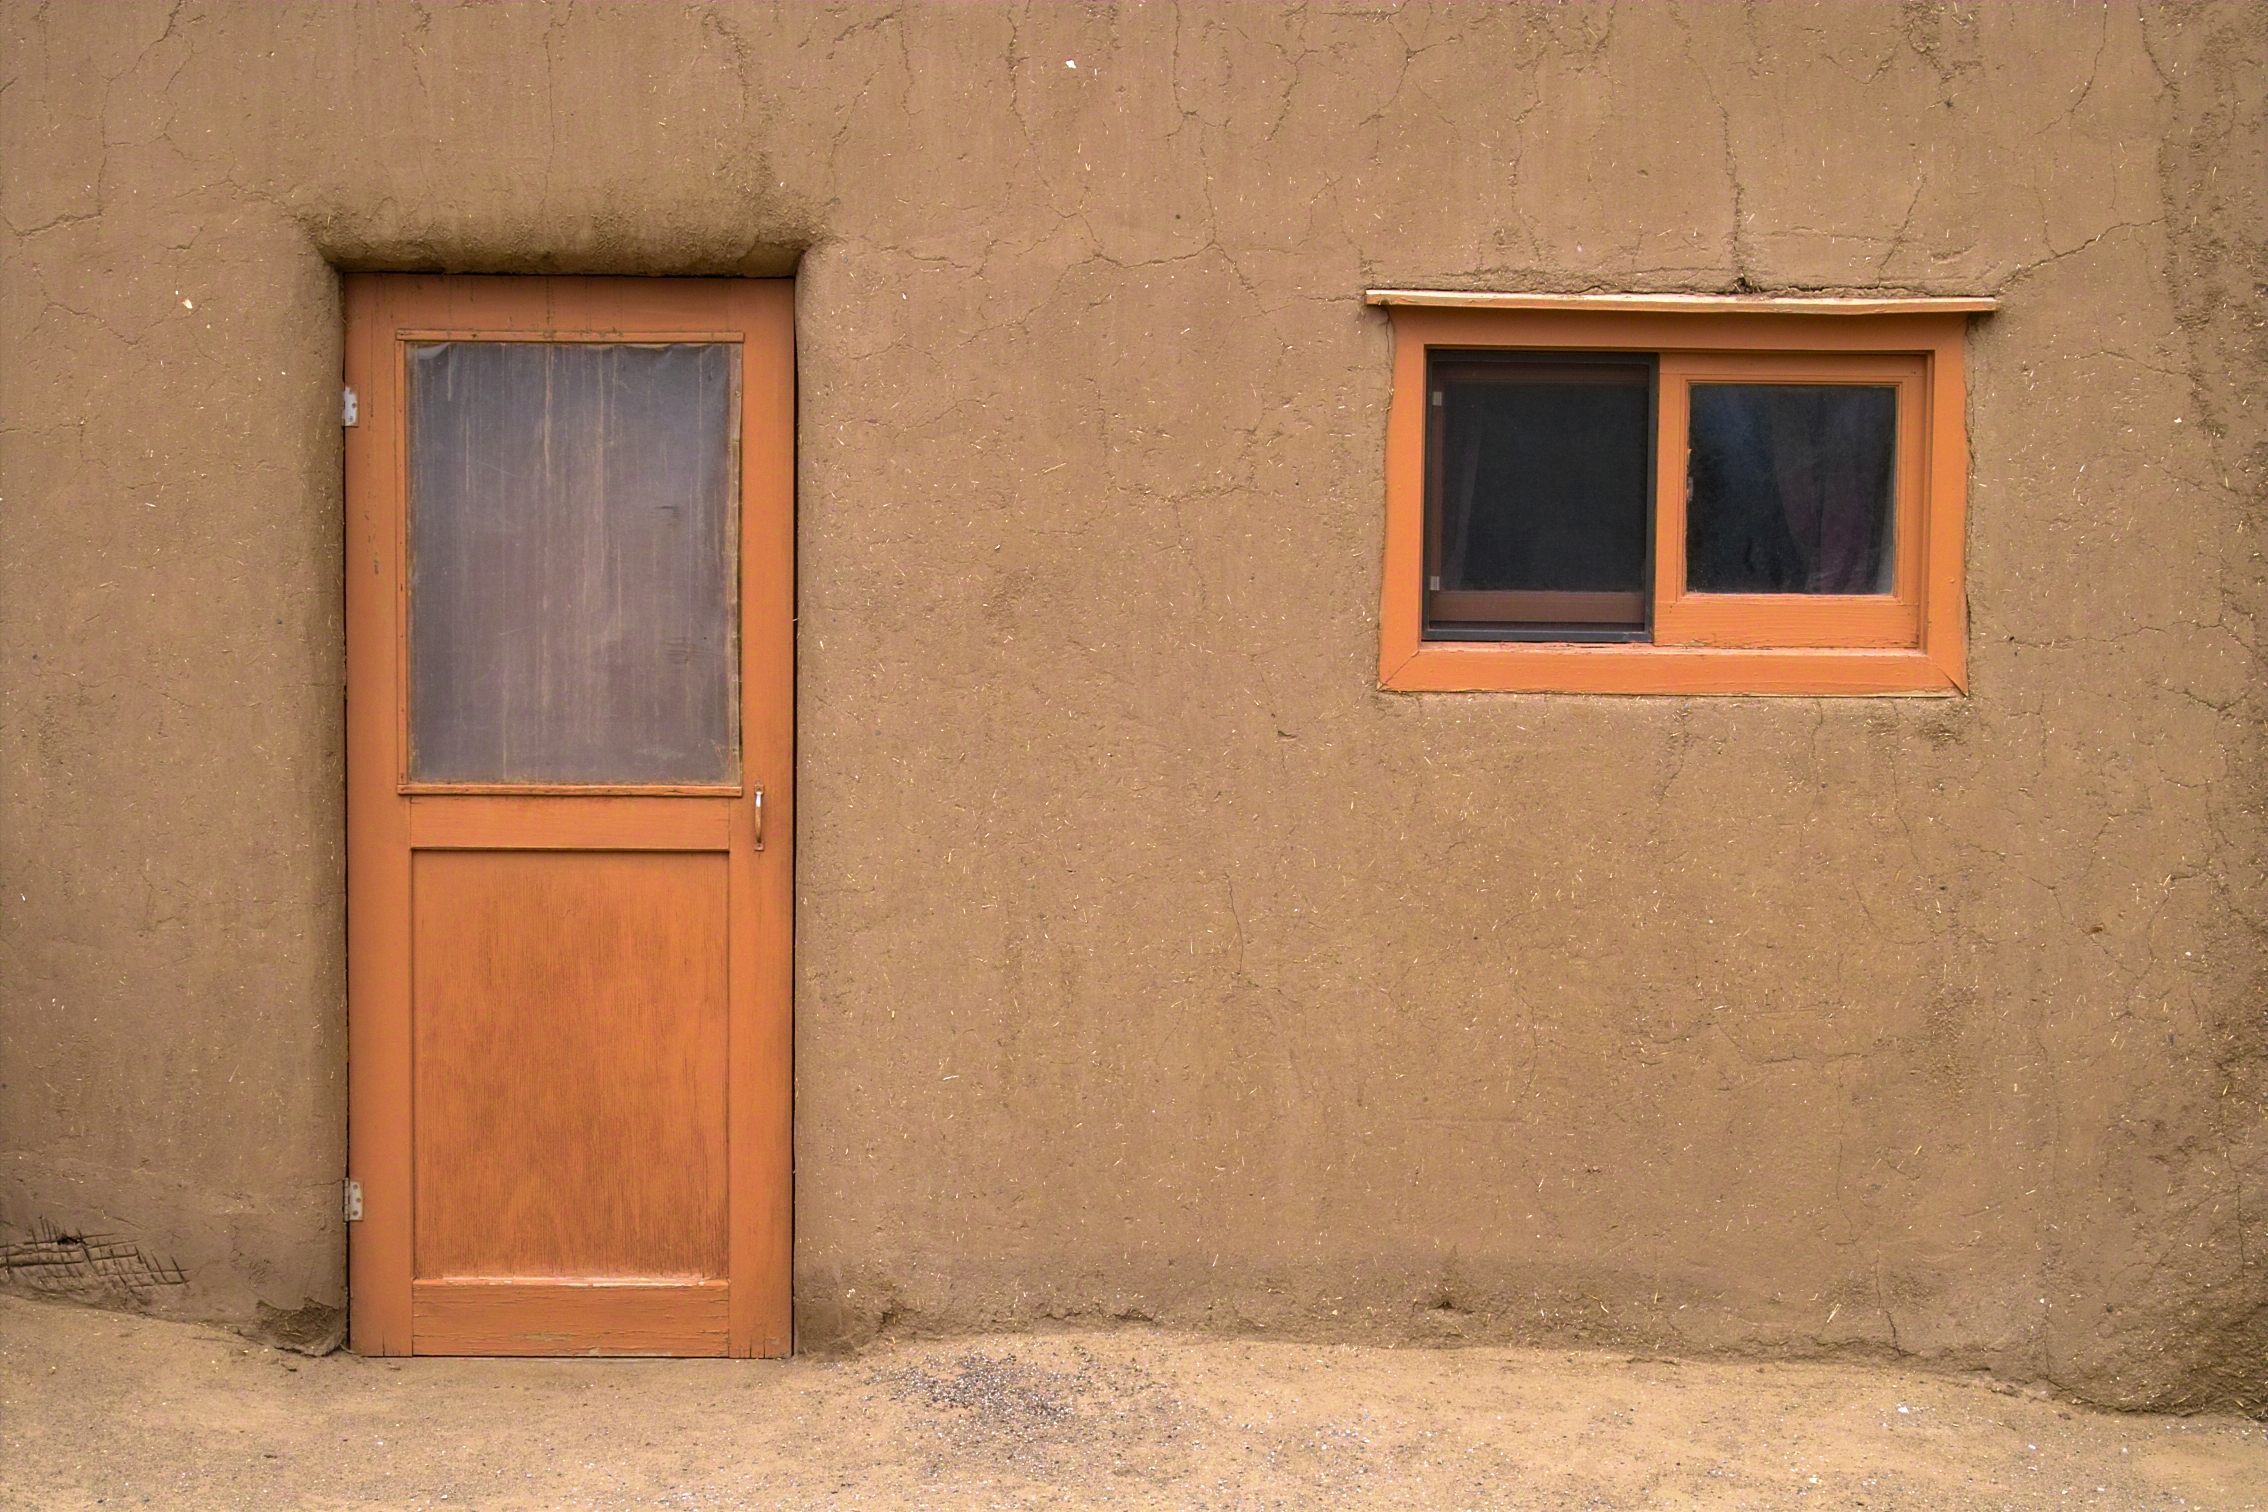 Taos Pueblo: House Entrance